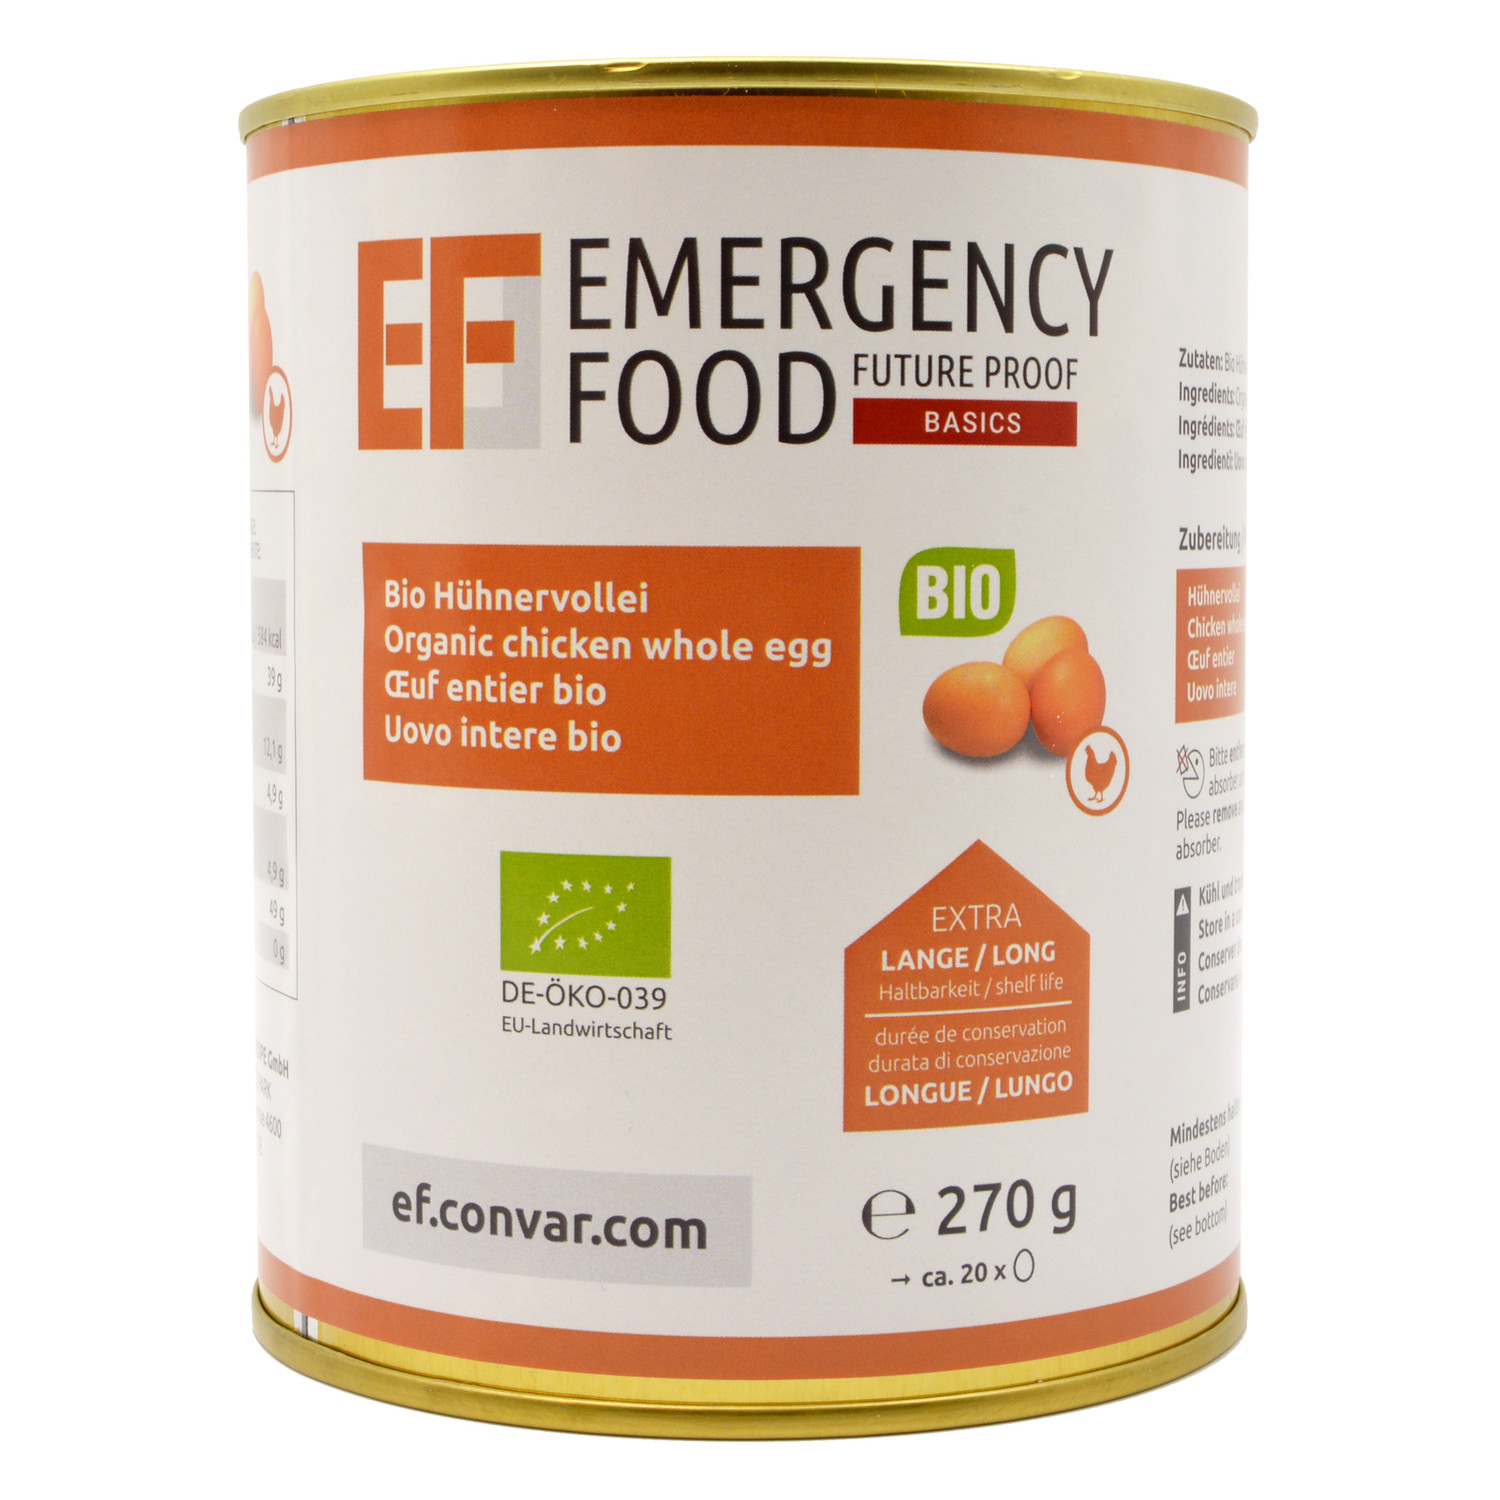 Convar EF Emergency Food Bio Hühnervollei 270 g Dose - 15 Jahre haltbar